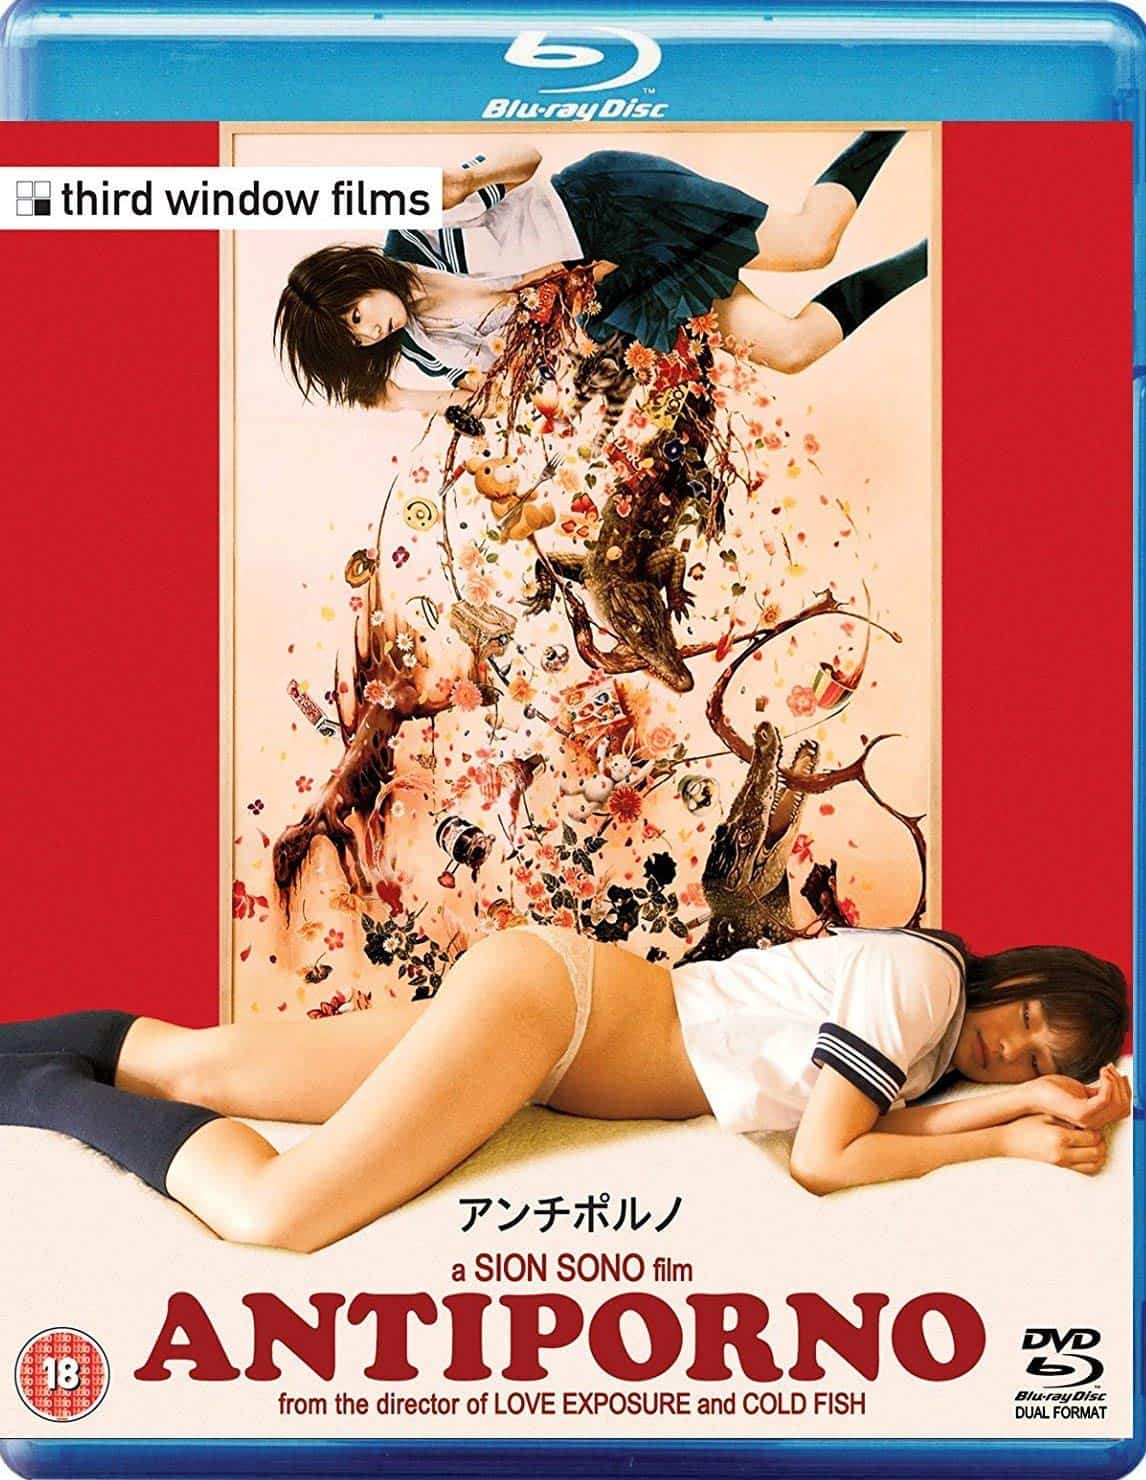 Japanese sensual movies